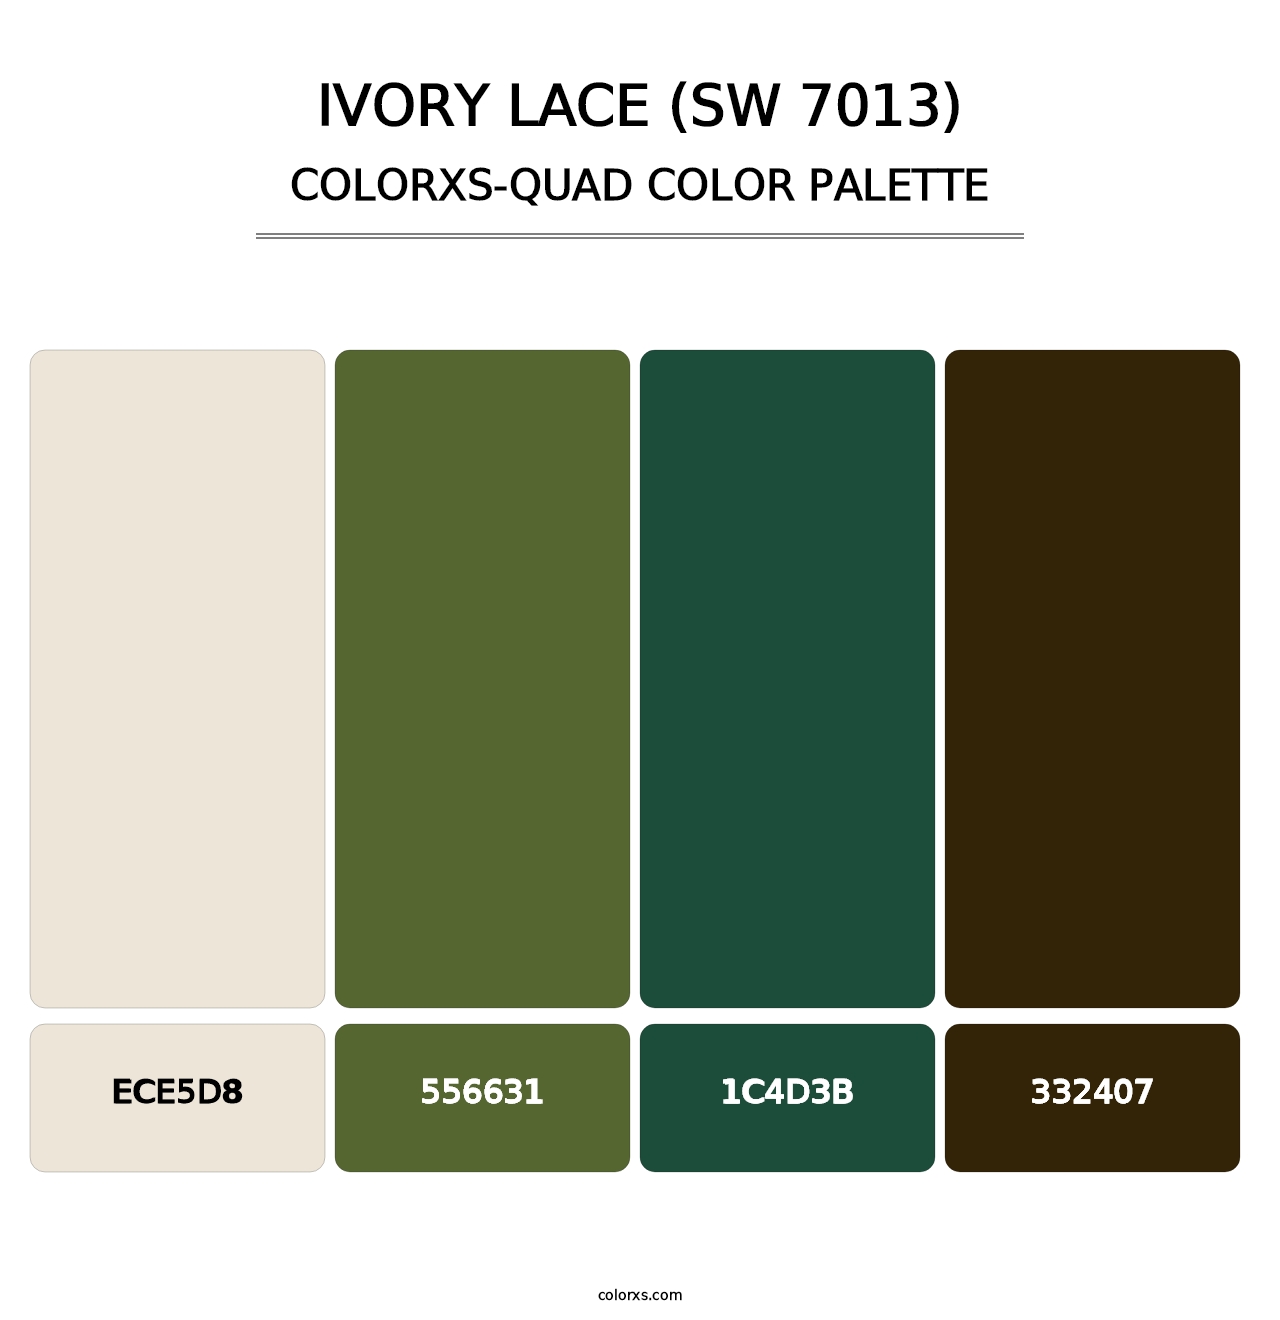 Ivory Lace (SW 7013) - Colorxs Quad Palette